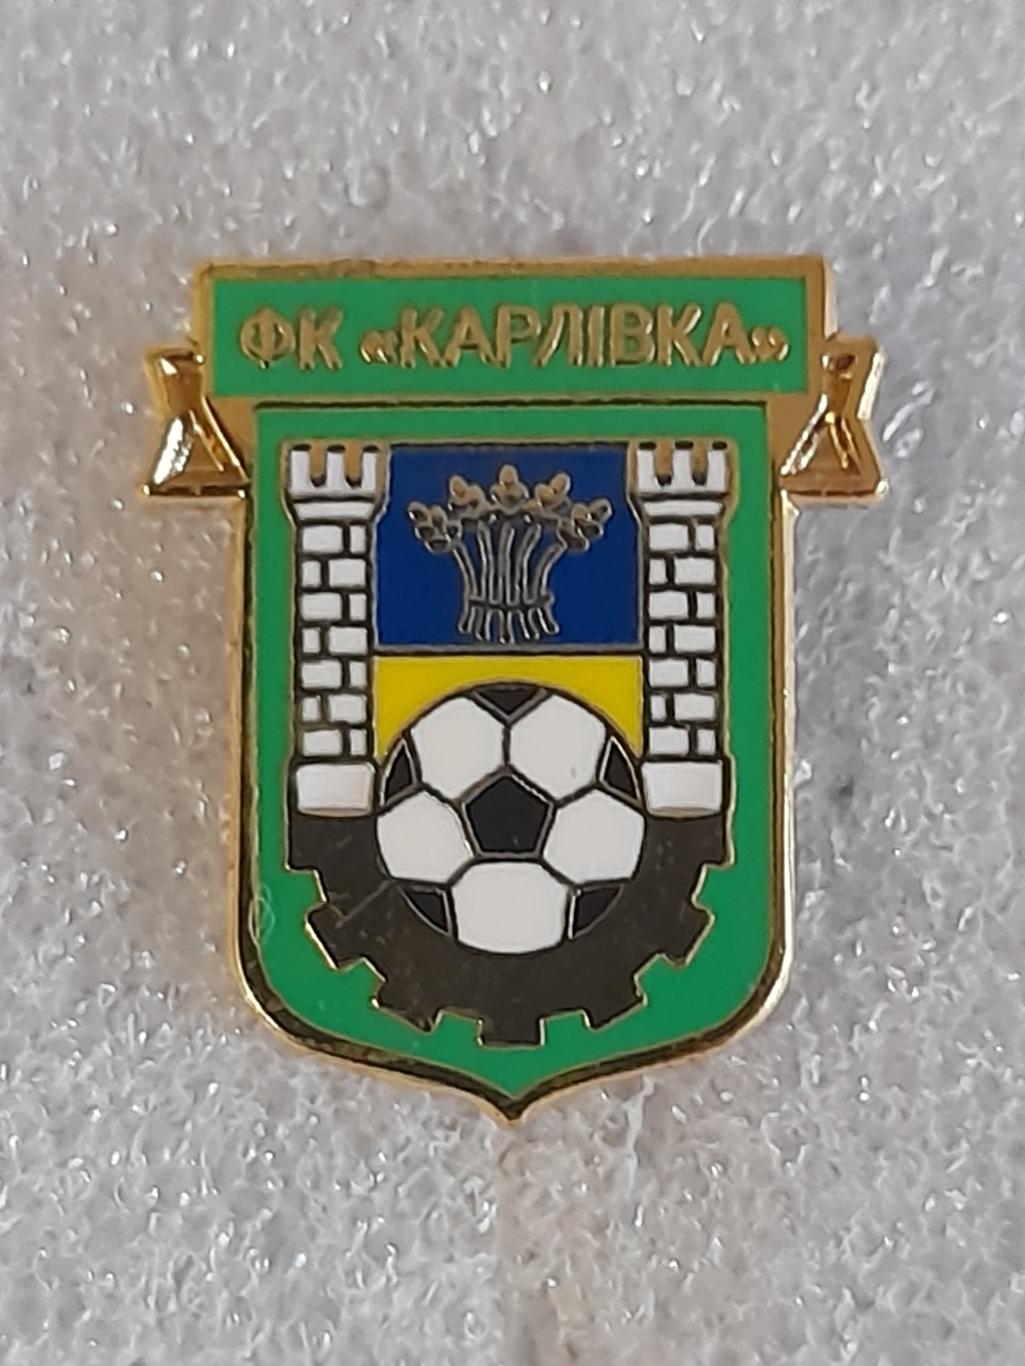 ФК Карловка (Украина)/ FC Karlovka, Ukraine